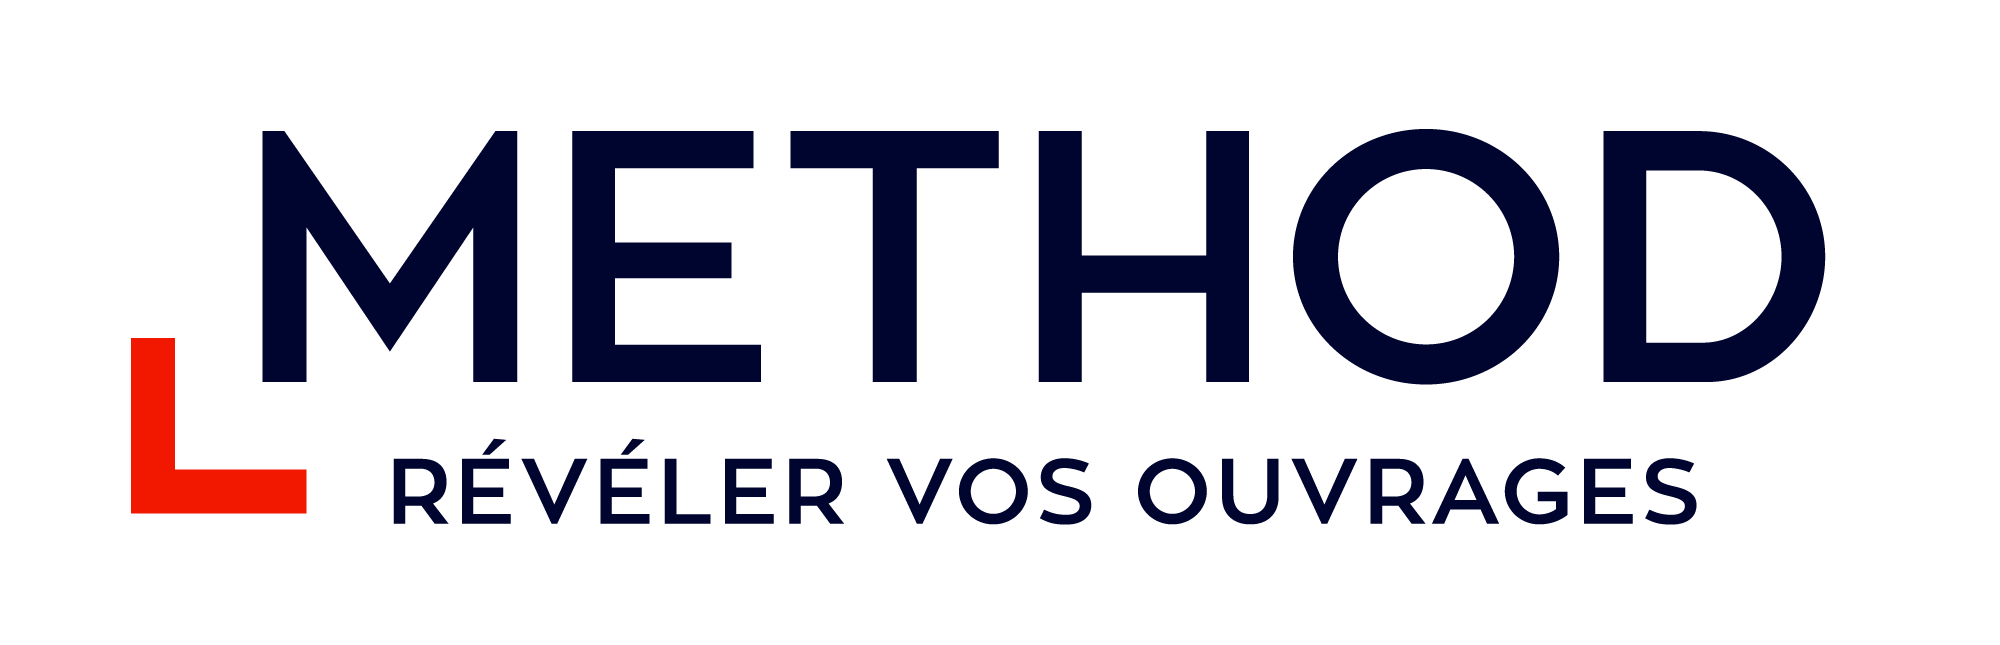 Agence Method logo